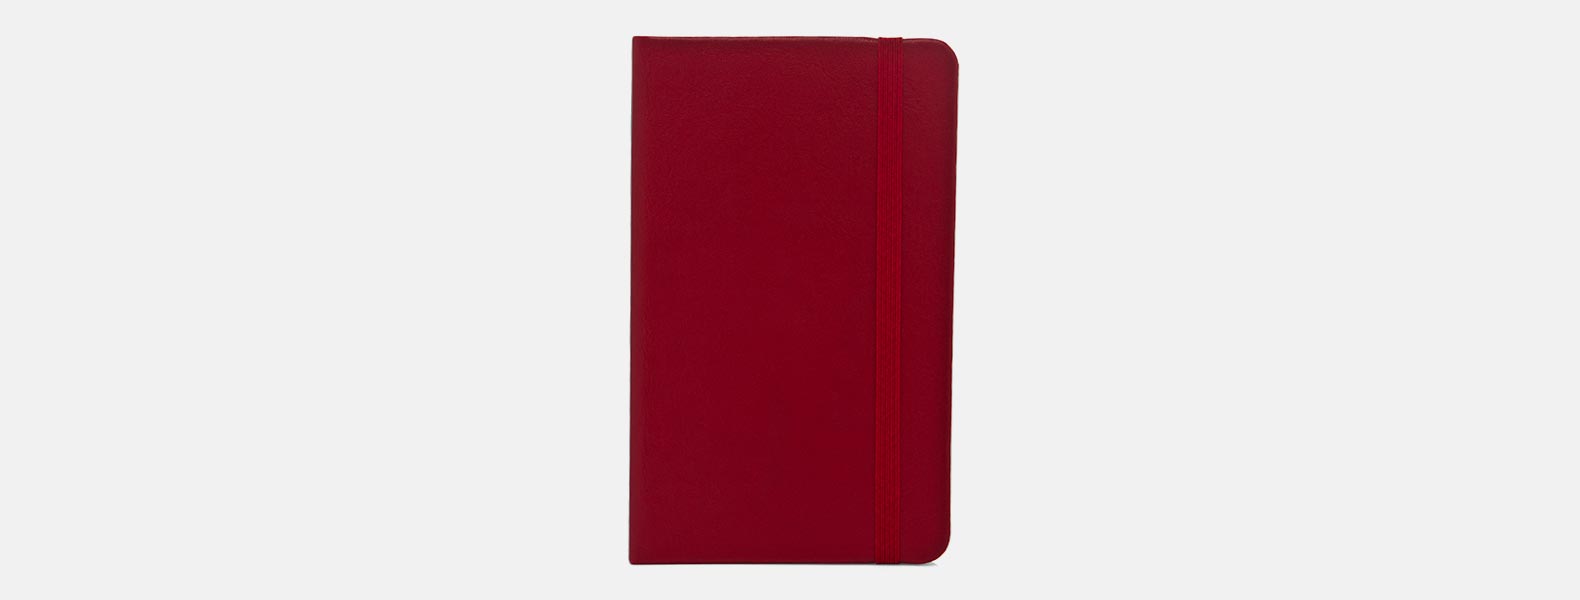 Caderno para anotações vermelho com capa dura em Courino. Conta com 80 folhas não pautadas e elástico para fechamento. Gramatura da folha de 70 g/m2.